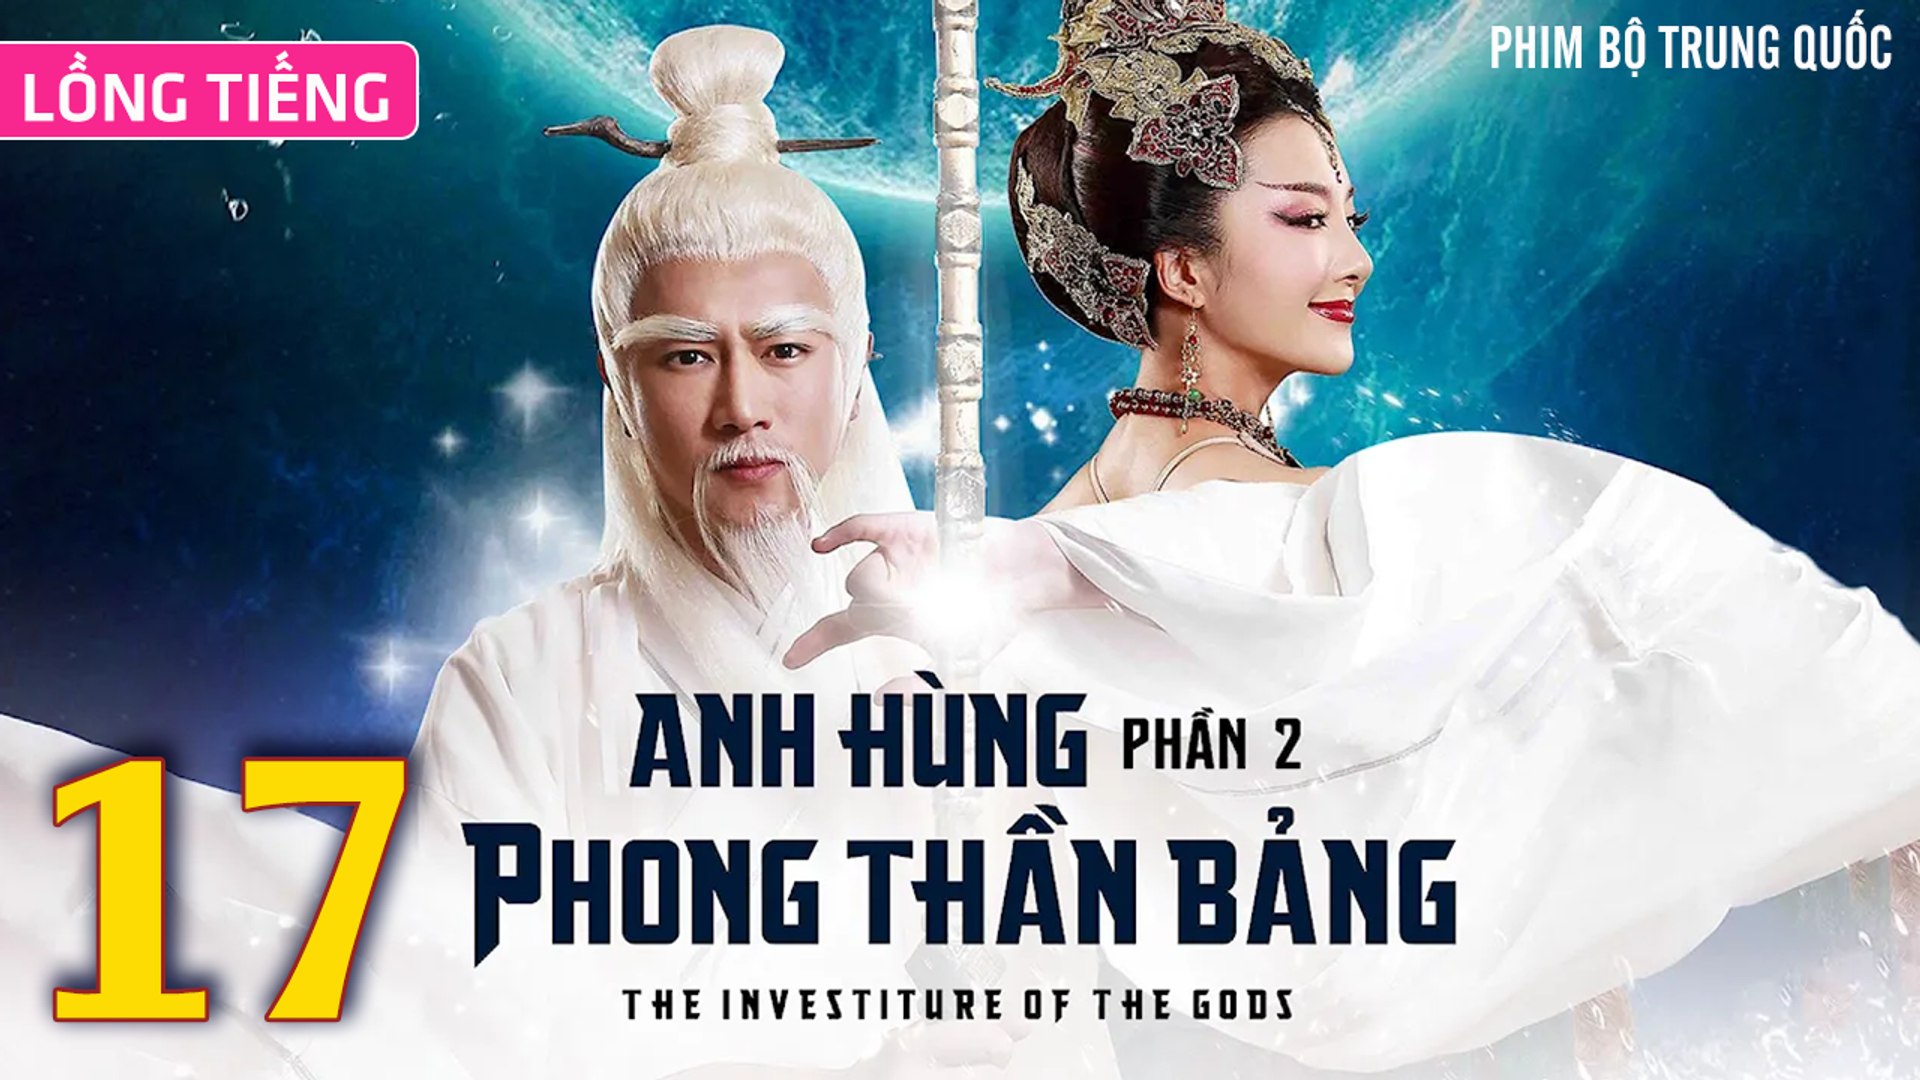 ⁣Phim Bộ Hay: ANH HÙNG PHONG THẦN BẢNG 2 - Tập 17 (Lồng Tiếng) | Phim Bộ Trung Quốc Hay Nhất 2023